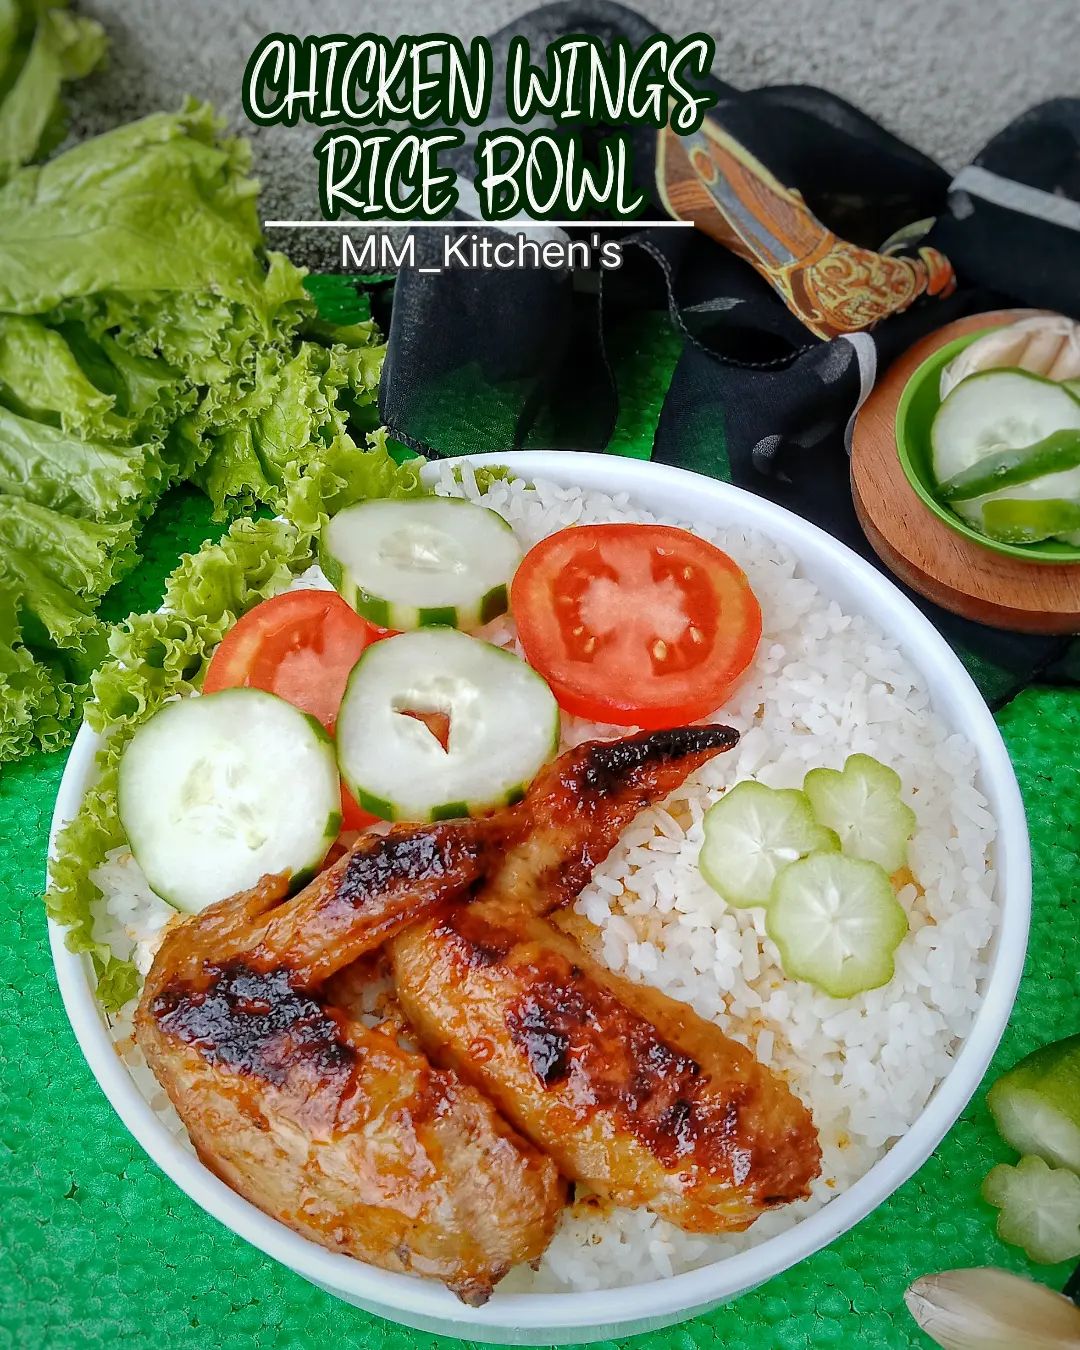 Resep Chicken Wings Rice Bowl dari @matthewmaureen